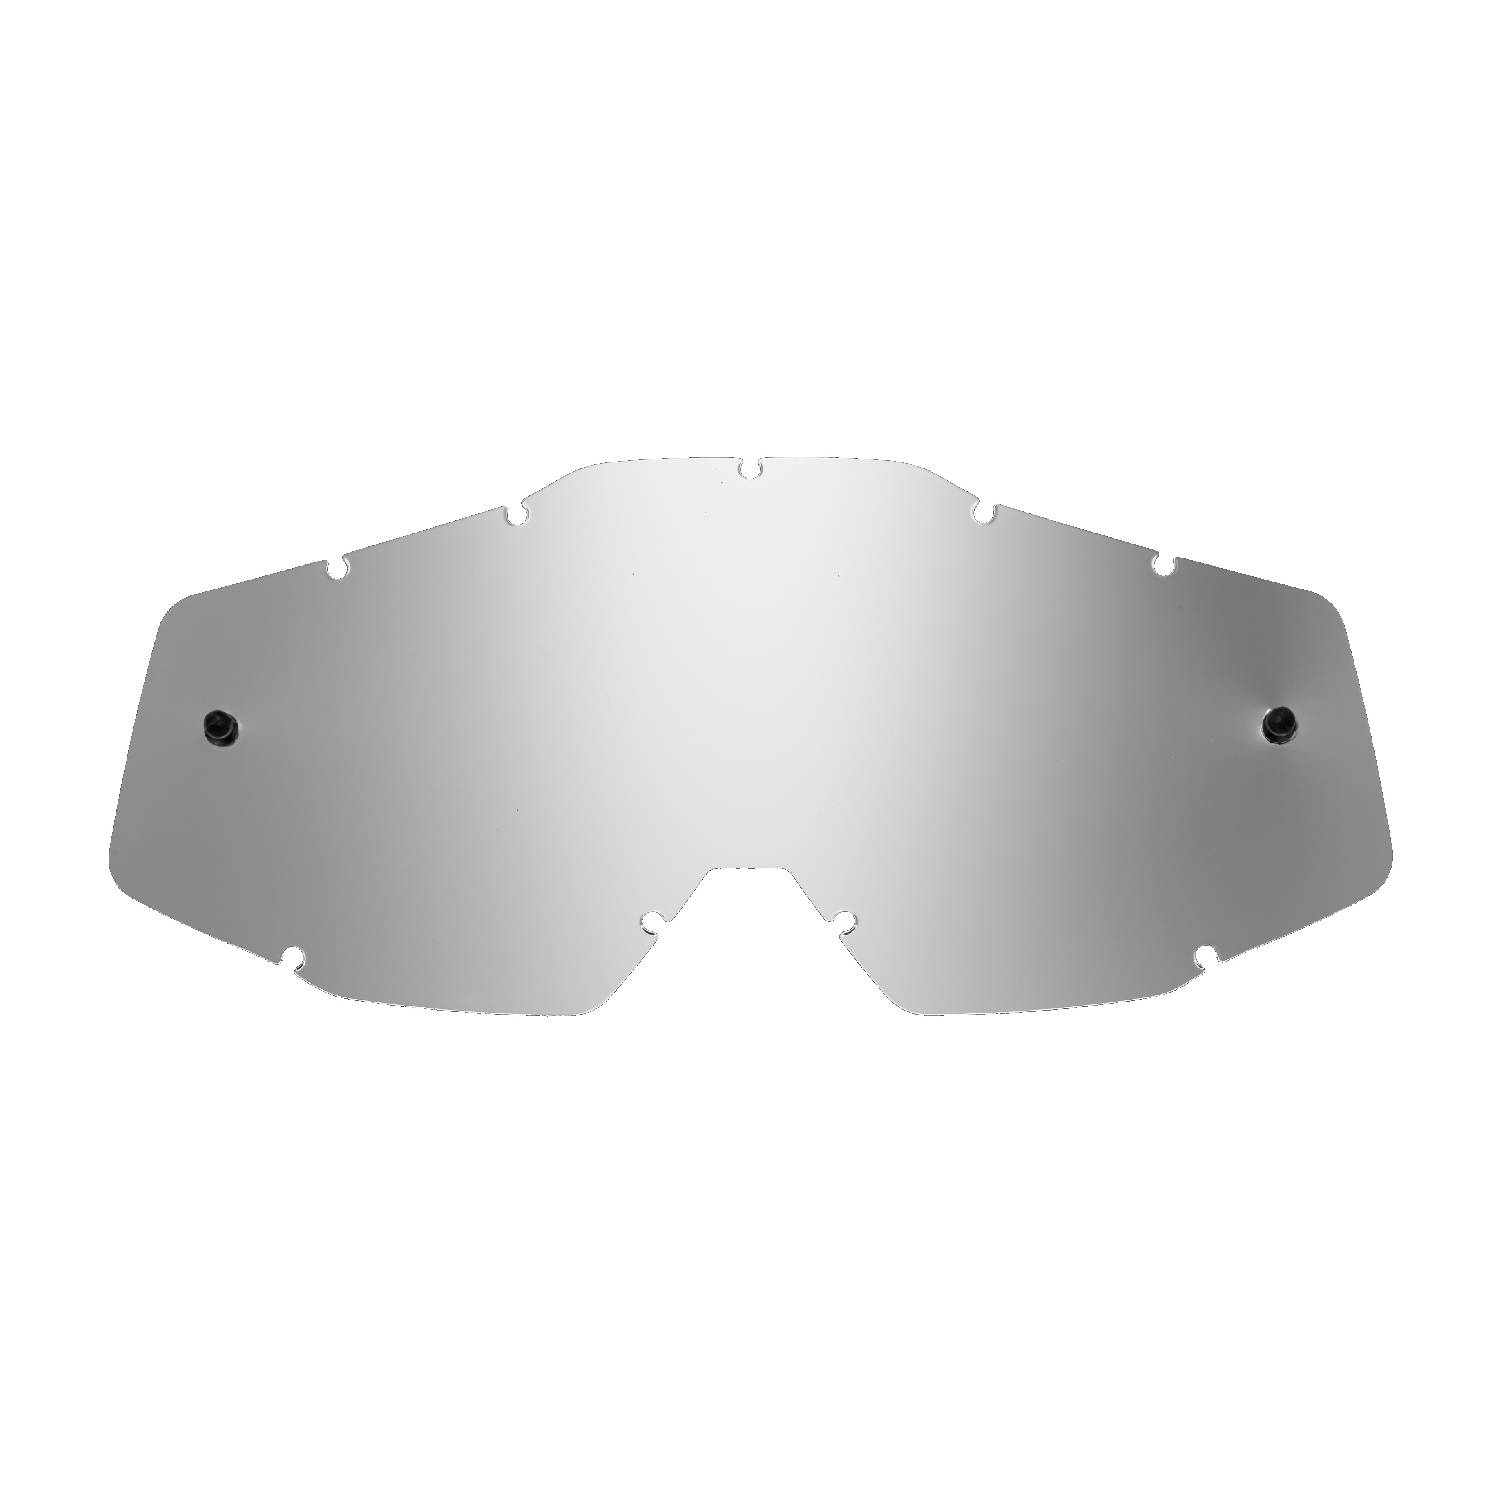 Lente di ricambio argento specchiato compatibile per occhiale/maschera FMF POWERBOMB/POWERCORE